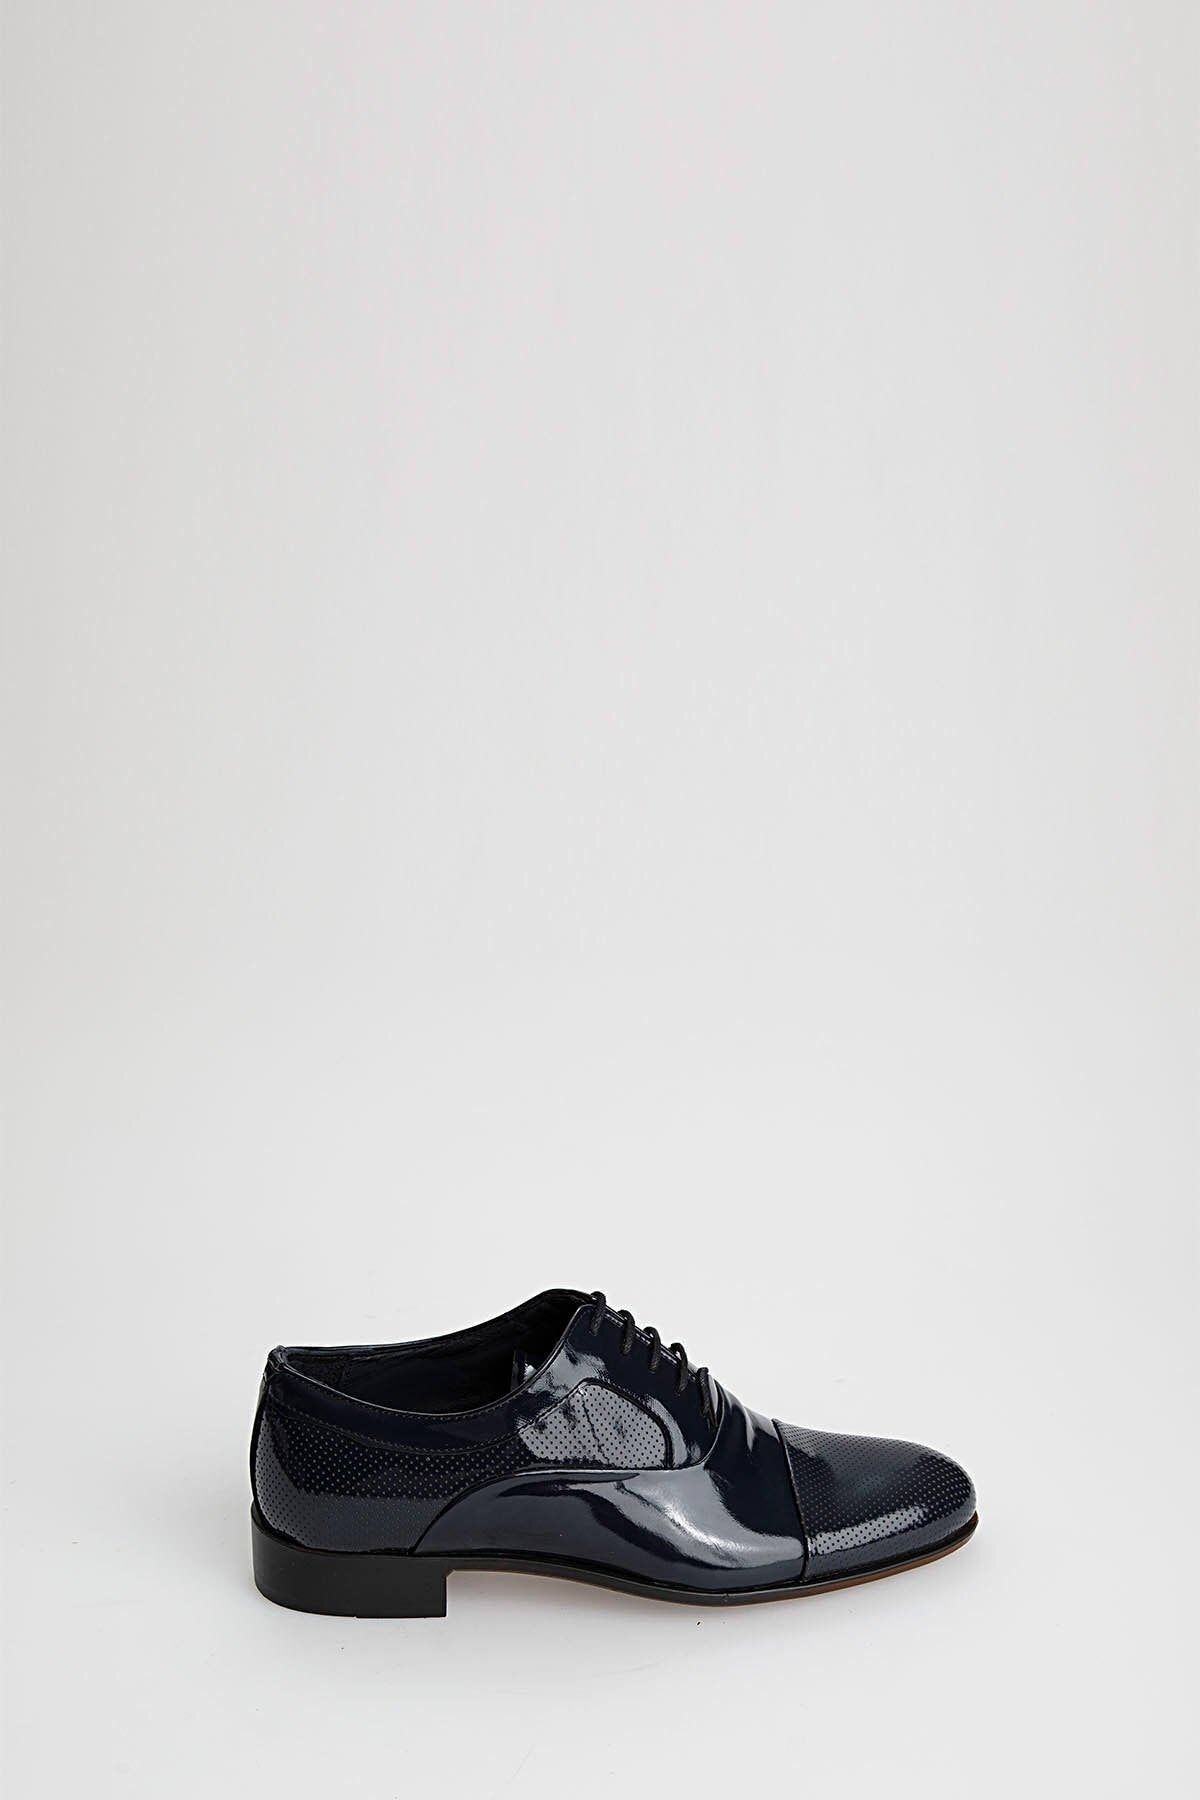 PAULMARK R7050 Erkek Ayakkabı Damatlık